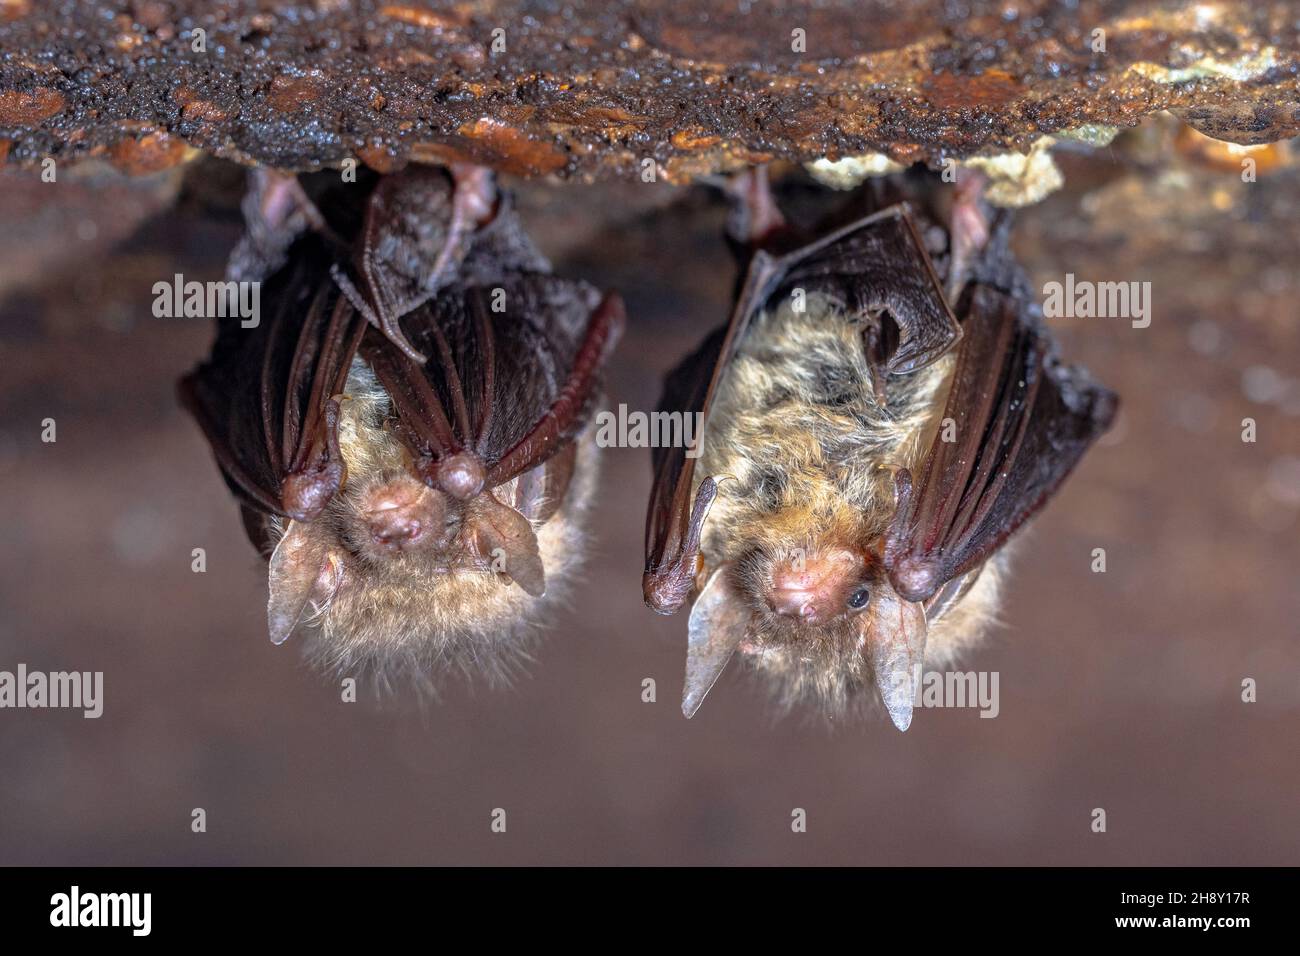 Bat marrone a long-eared, bat comune a long-eared (Plecotus auritus). Due pipistrelli di ibernazione in una cantina in inverno. Drenthe, Paesi Bassi. Foto Stock